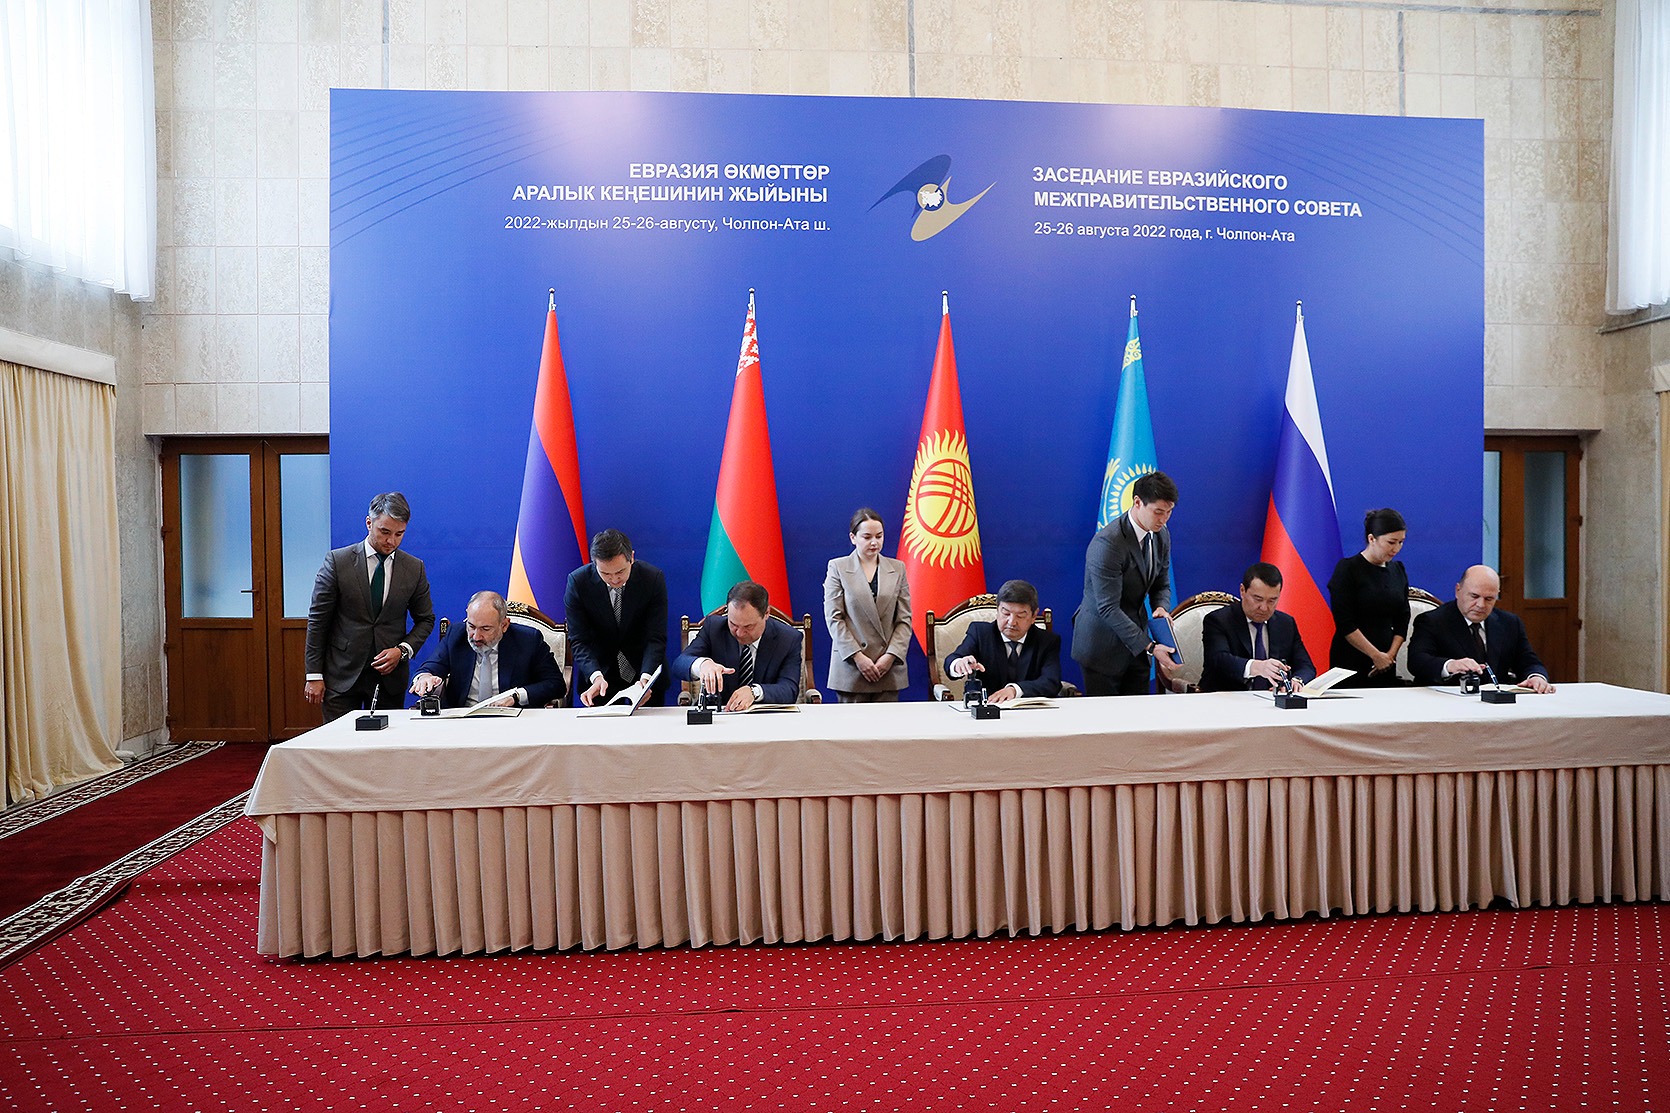 За первое полугодия 2022 года взаимная торговля Армении со странами ЕАЭС увеличилась на 52,5%: речь премьер-министра Пашиняна на заседании Евразийского межправительственного совета